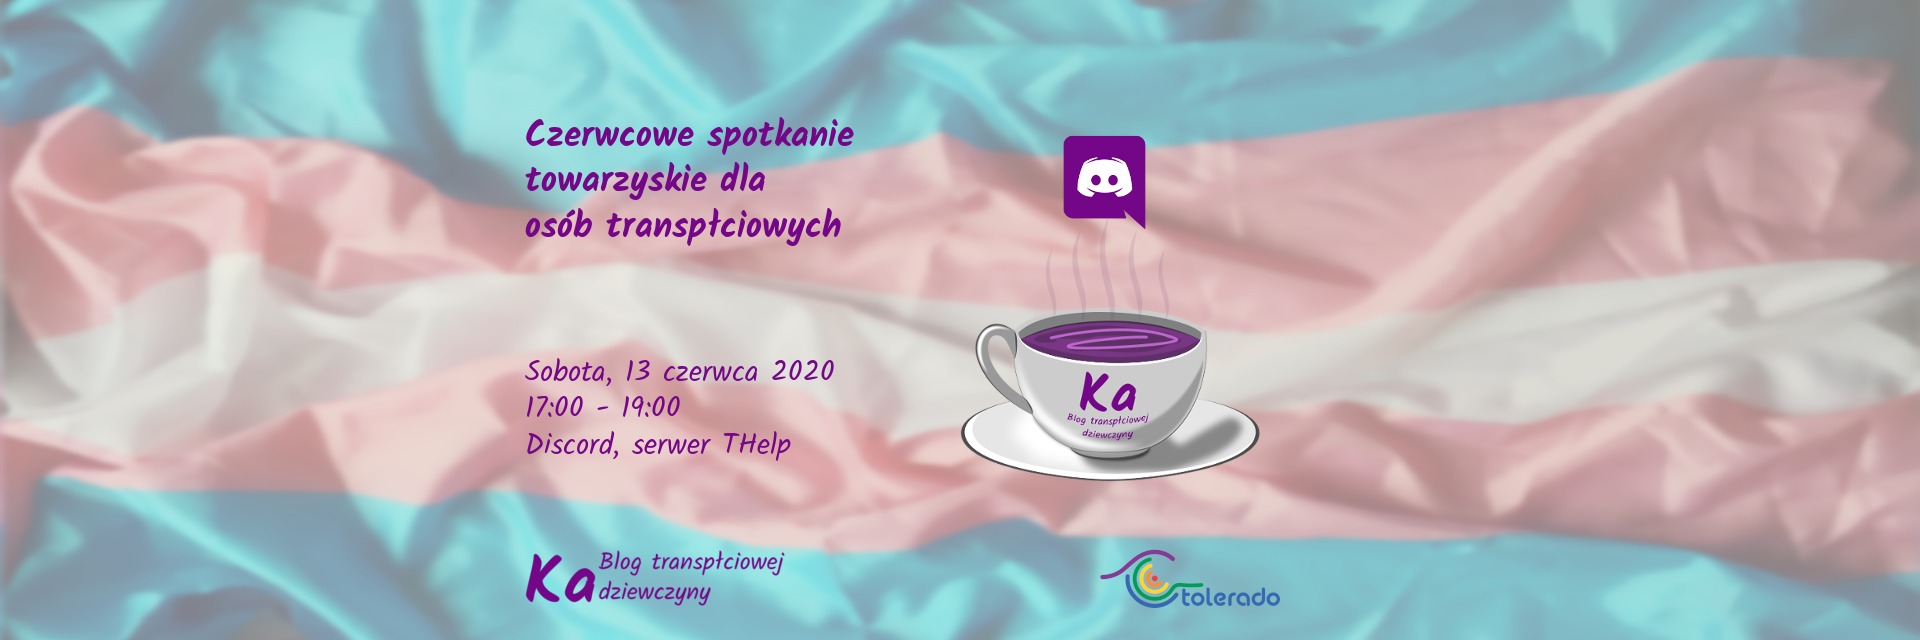 Czerwcowe spotkanie dla osób transpłciowych 2020